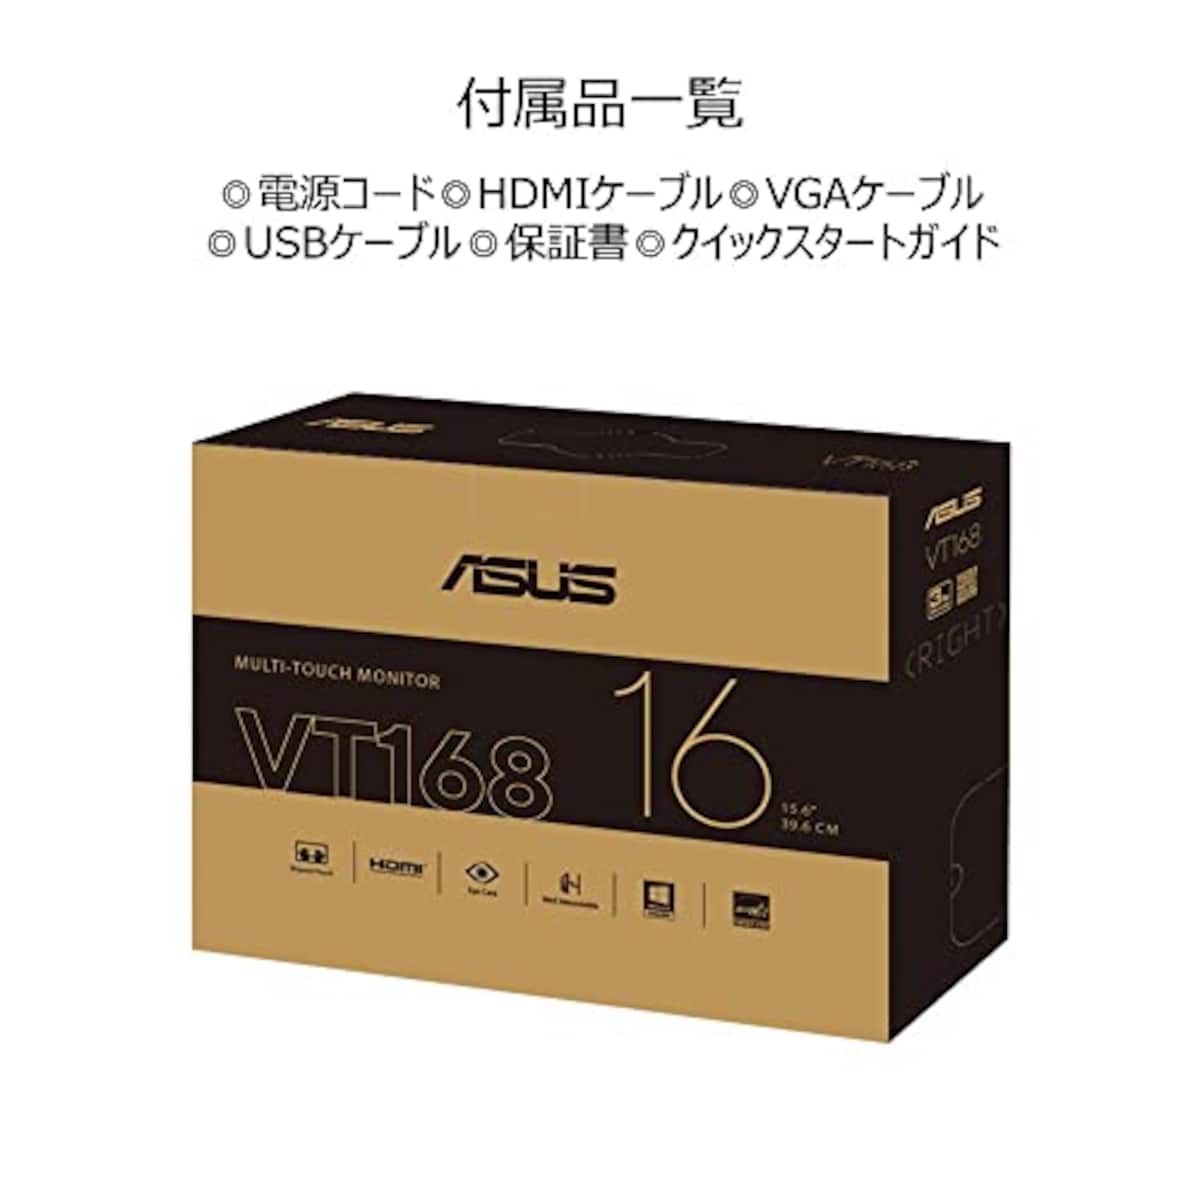  ASUS タッチモニター VT168HR 15.6インチ/10点マルチタッチ/HDMI/フリッカフリー技術/ブルーライト軽減/VESAマウント/国内正規品画像5 